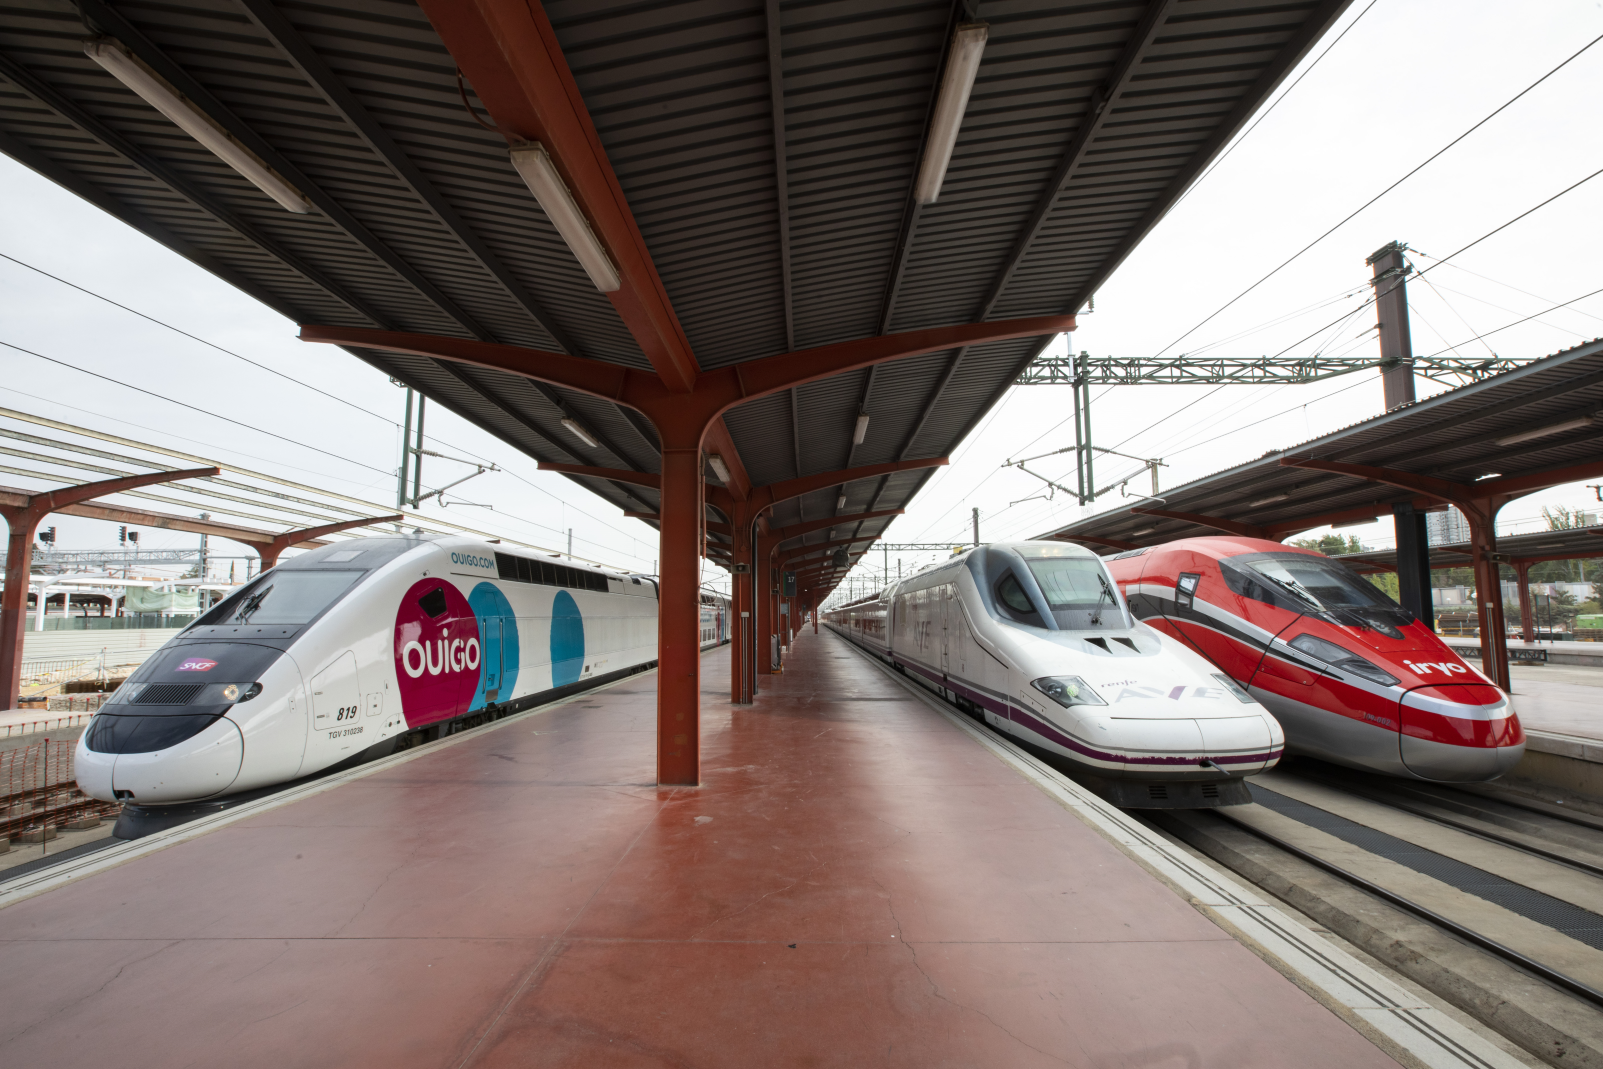 Los tráficos de los tres operadores ferroviarios: Renfe/Avlo, Ouigo e Iryo se concentrarán progresivamente en la estación de Chamartín convertida en cabecera de los servicios de alta velocidad Madrid-Alicante/Murcia.